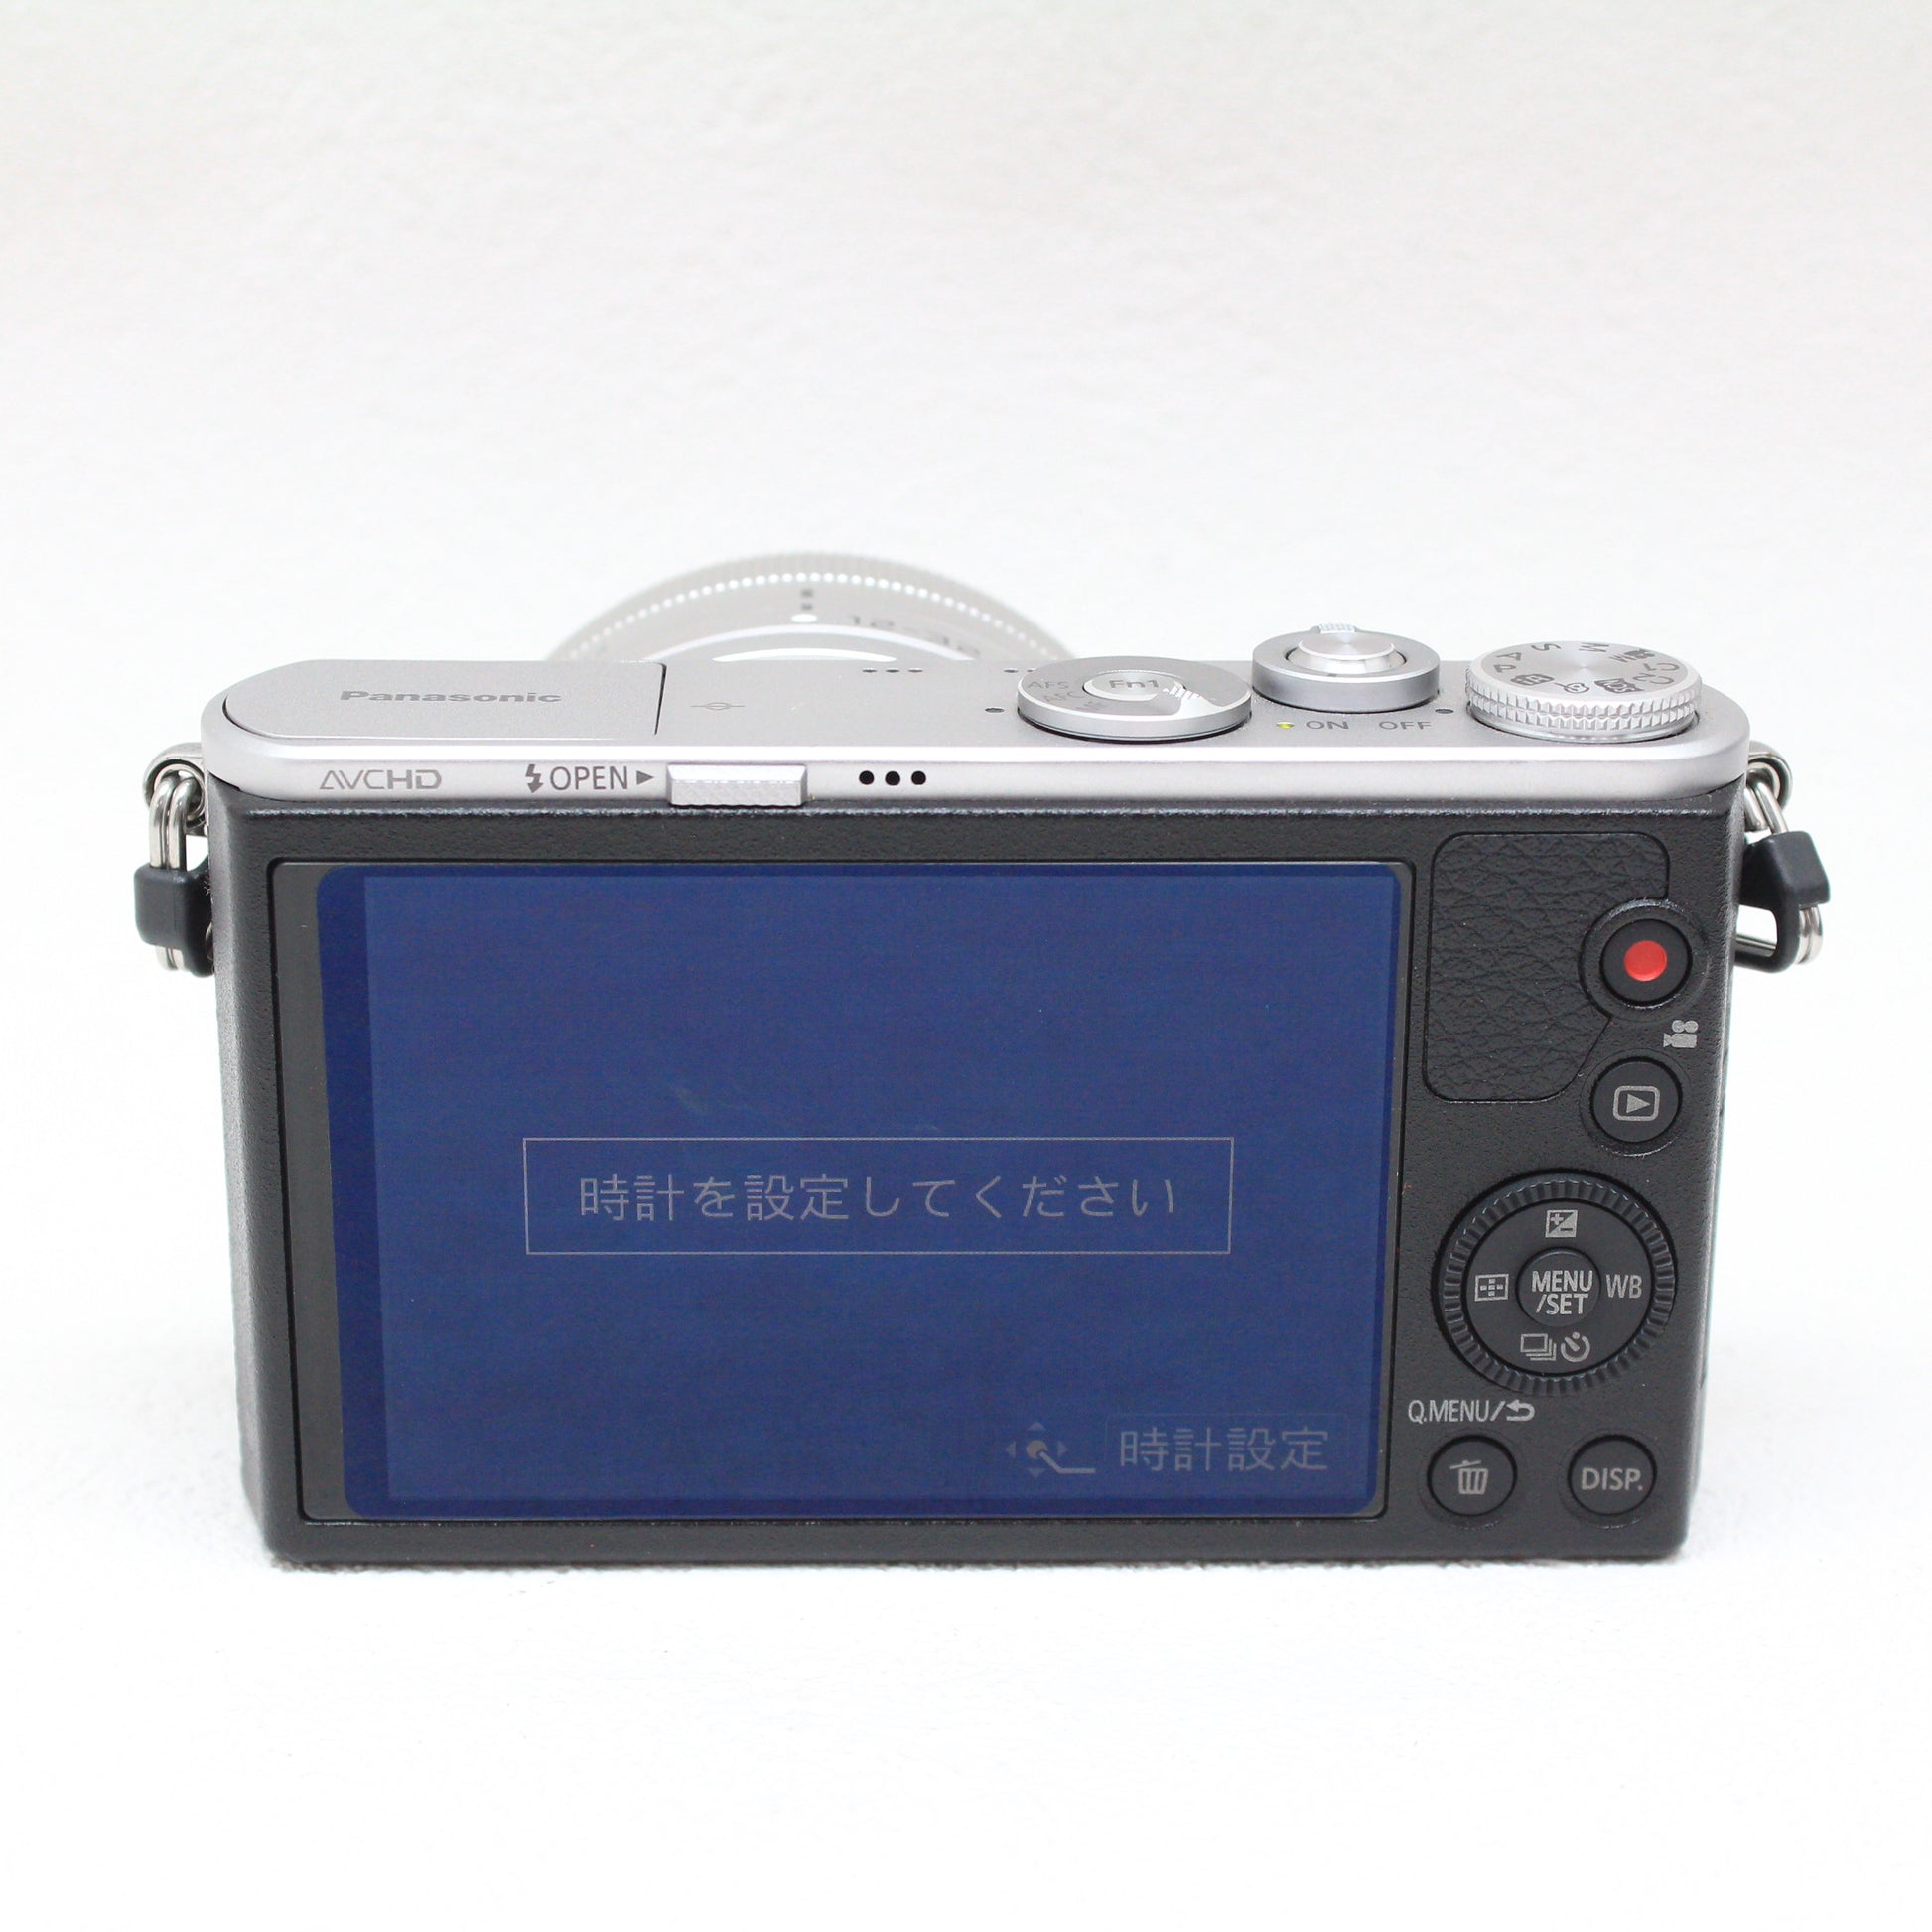 中古品Panasonic DMC-GM1 レンズ キット【11月18日(土) youtube生配信でご紹介】